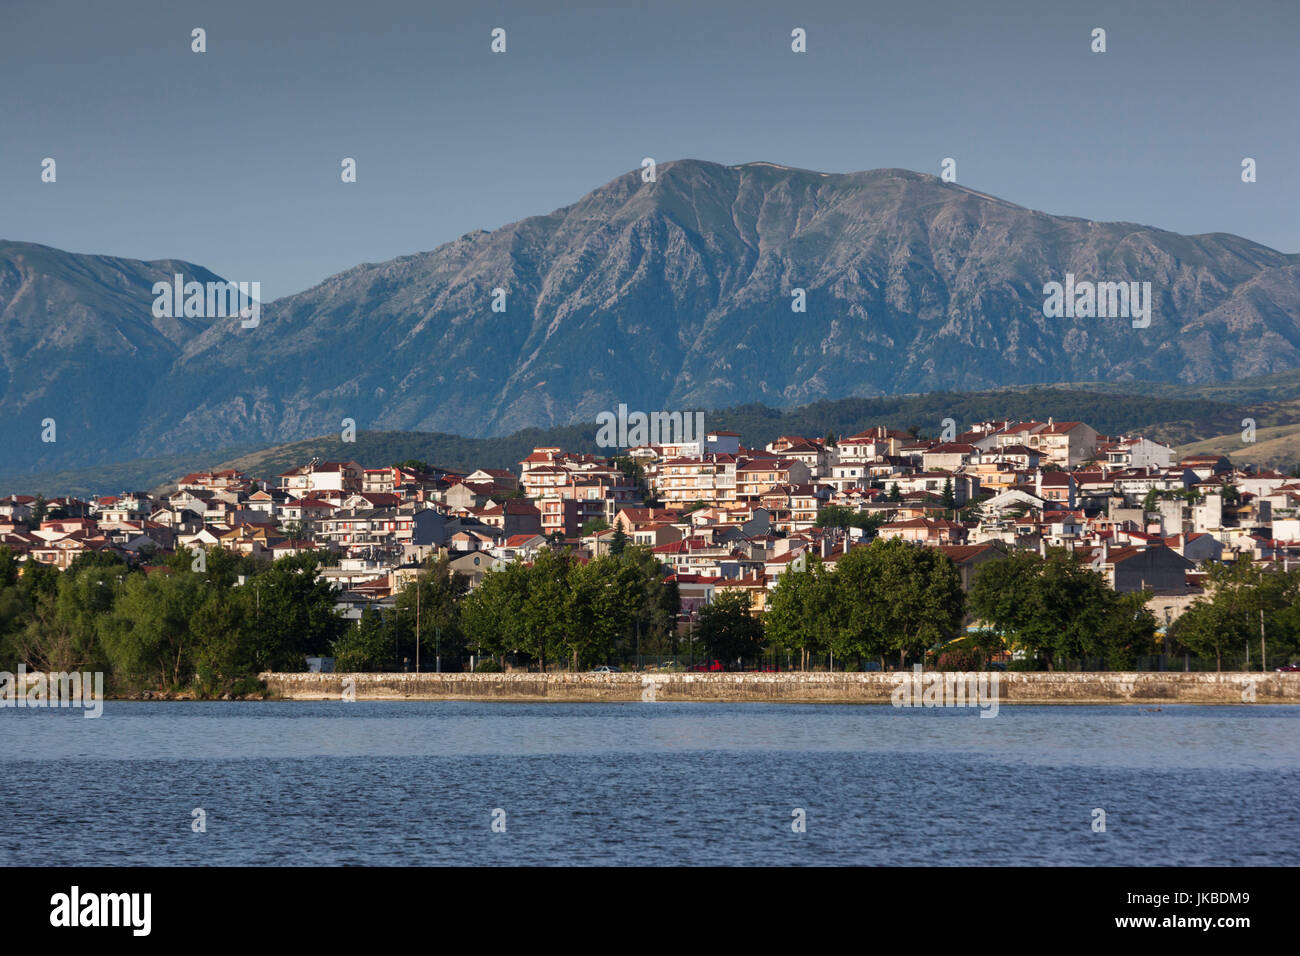 Griechenland, Region Epirus, Ioannina, erhöhte Stadtansicht und See Pamvotis, dawn Stockfoto